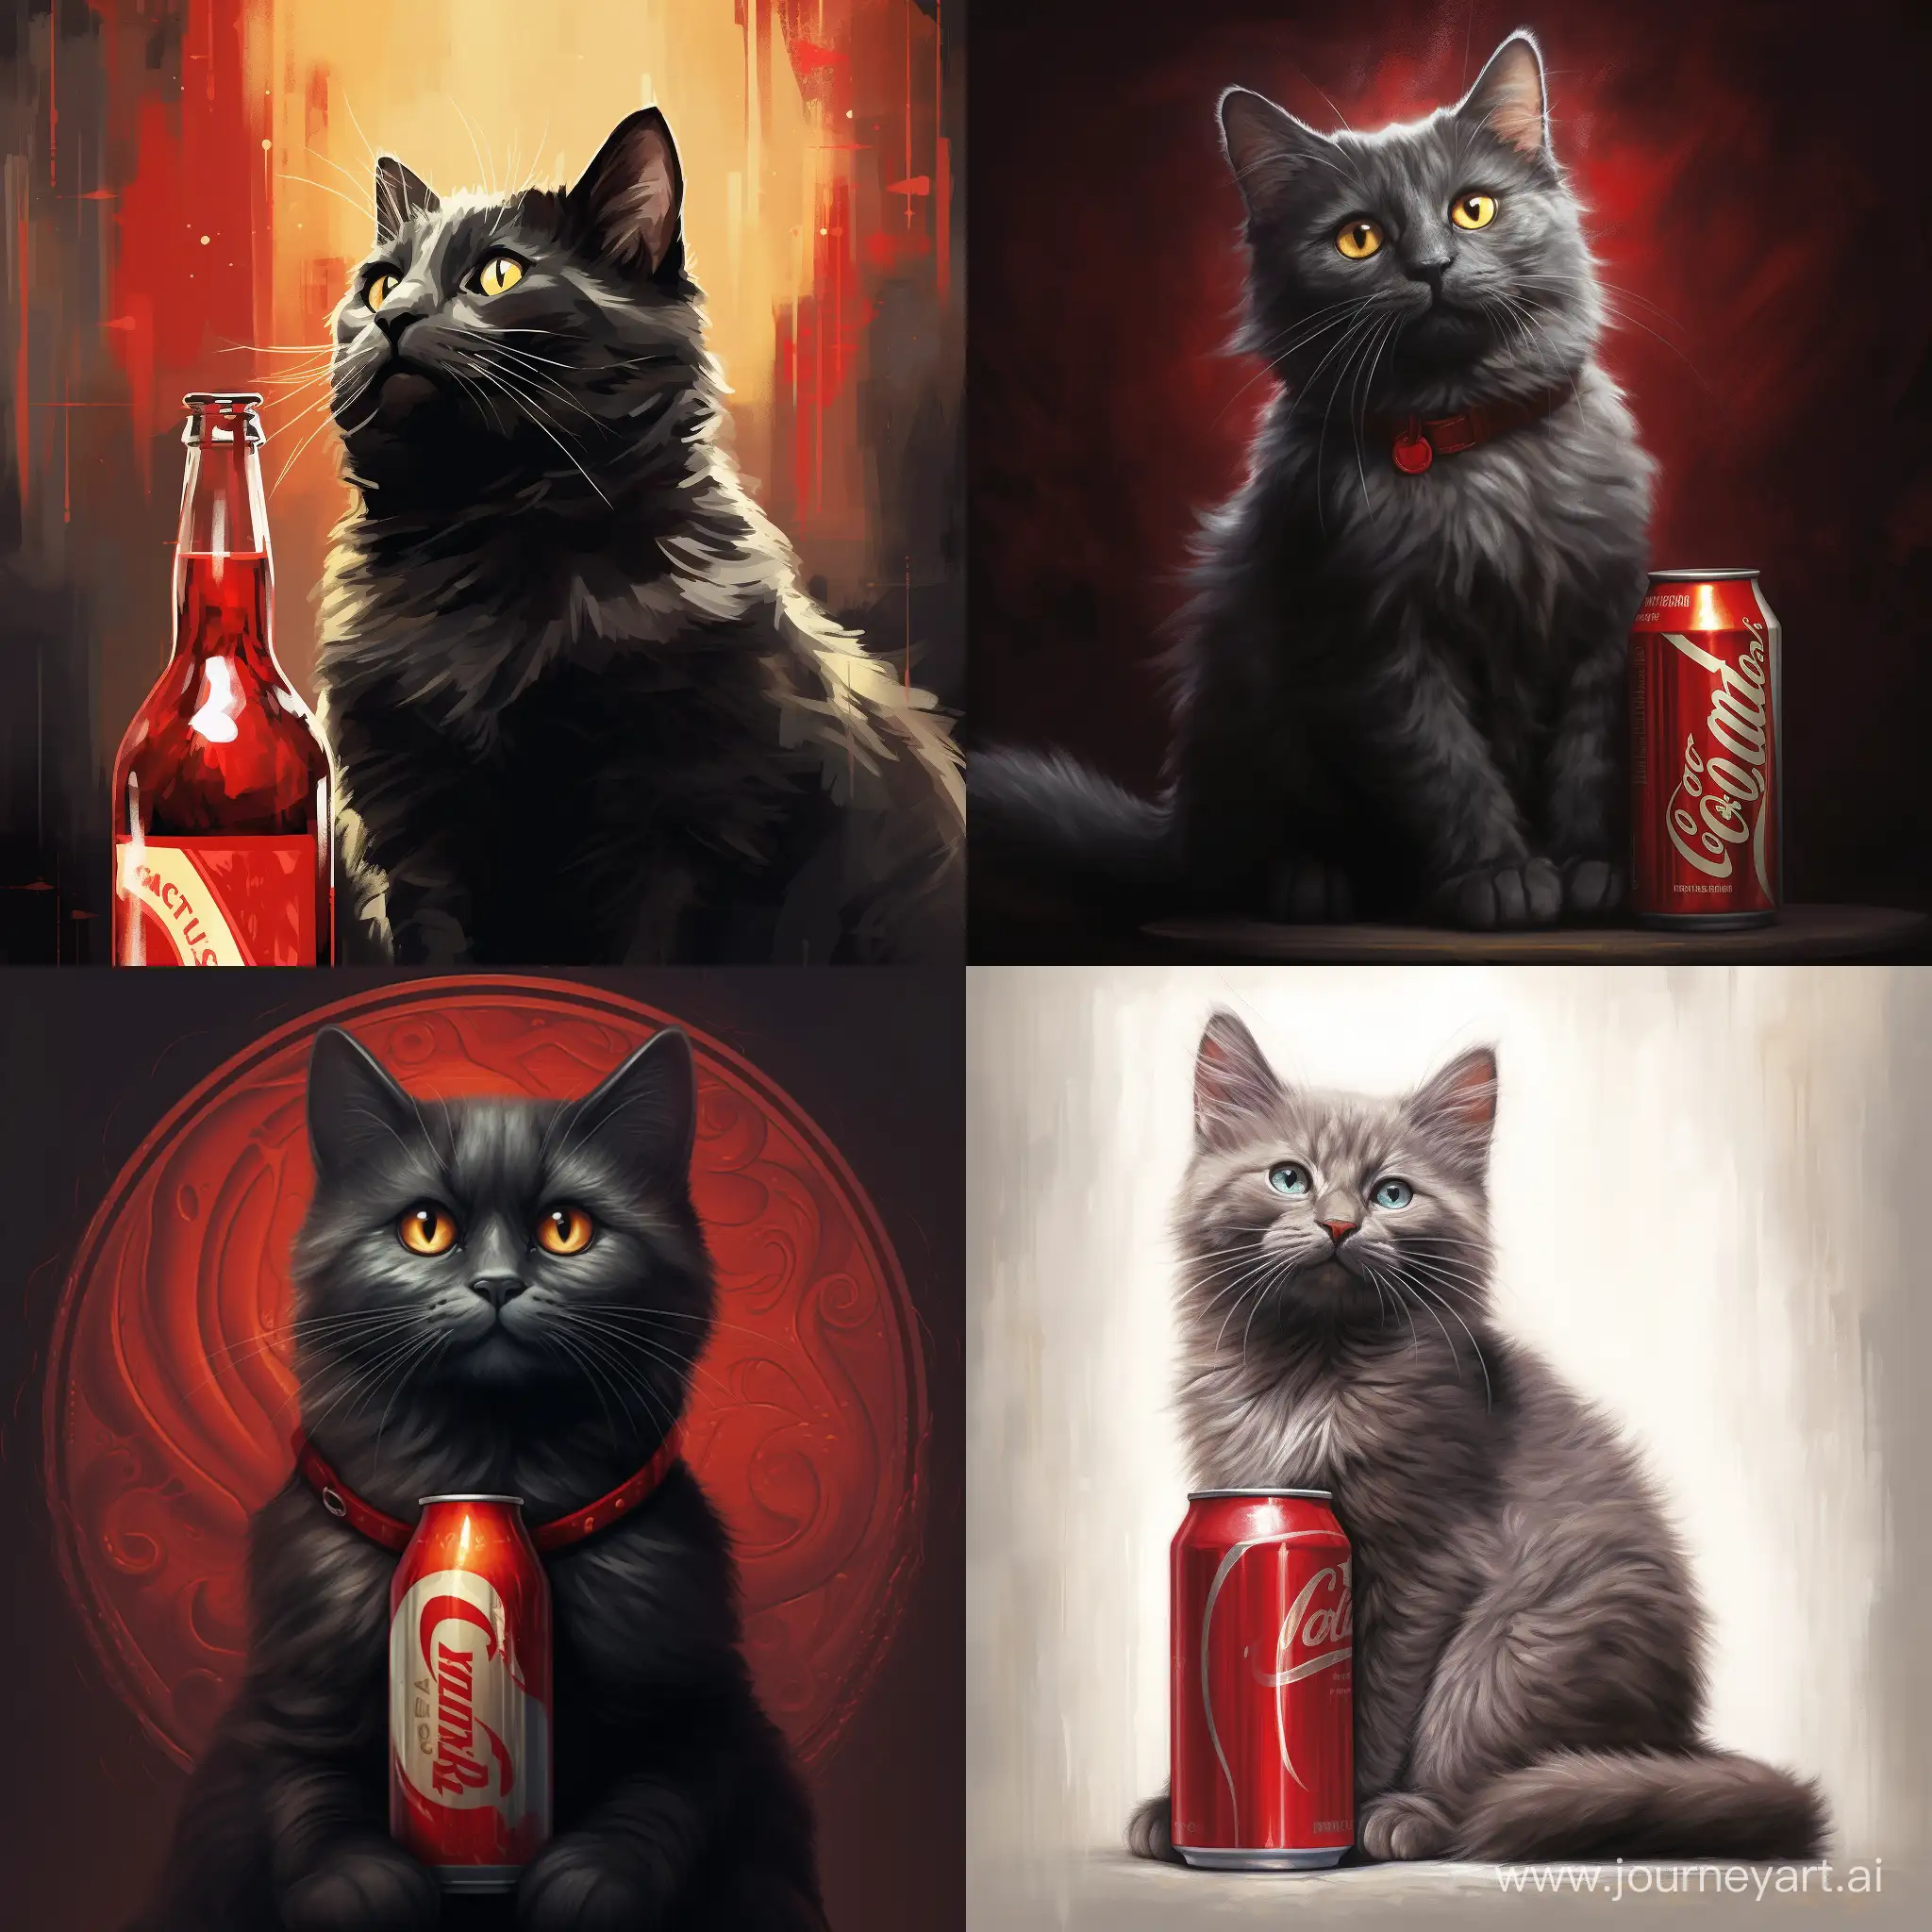 A cat with a Coca-Cola design